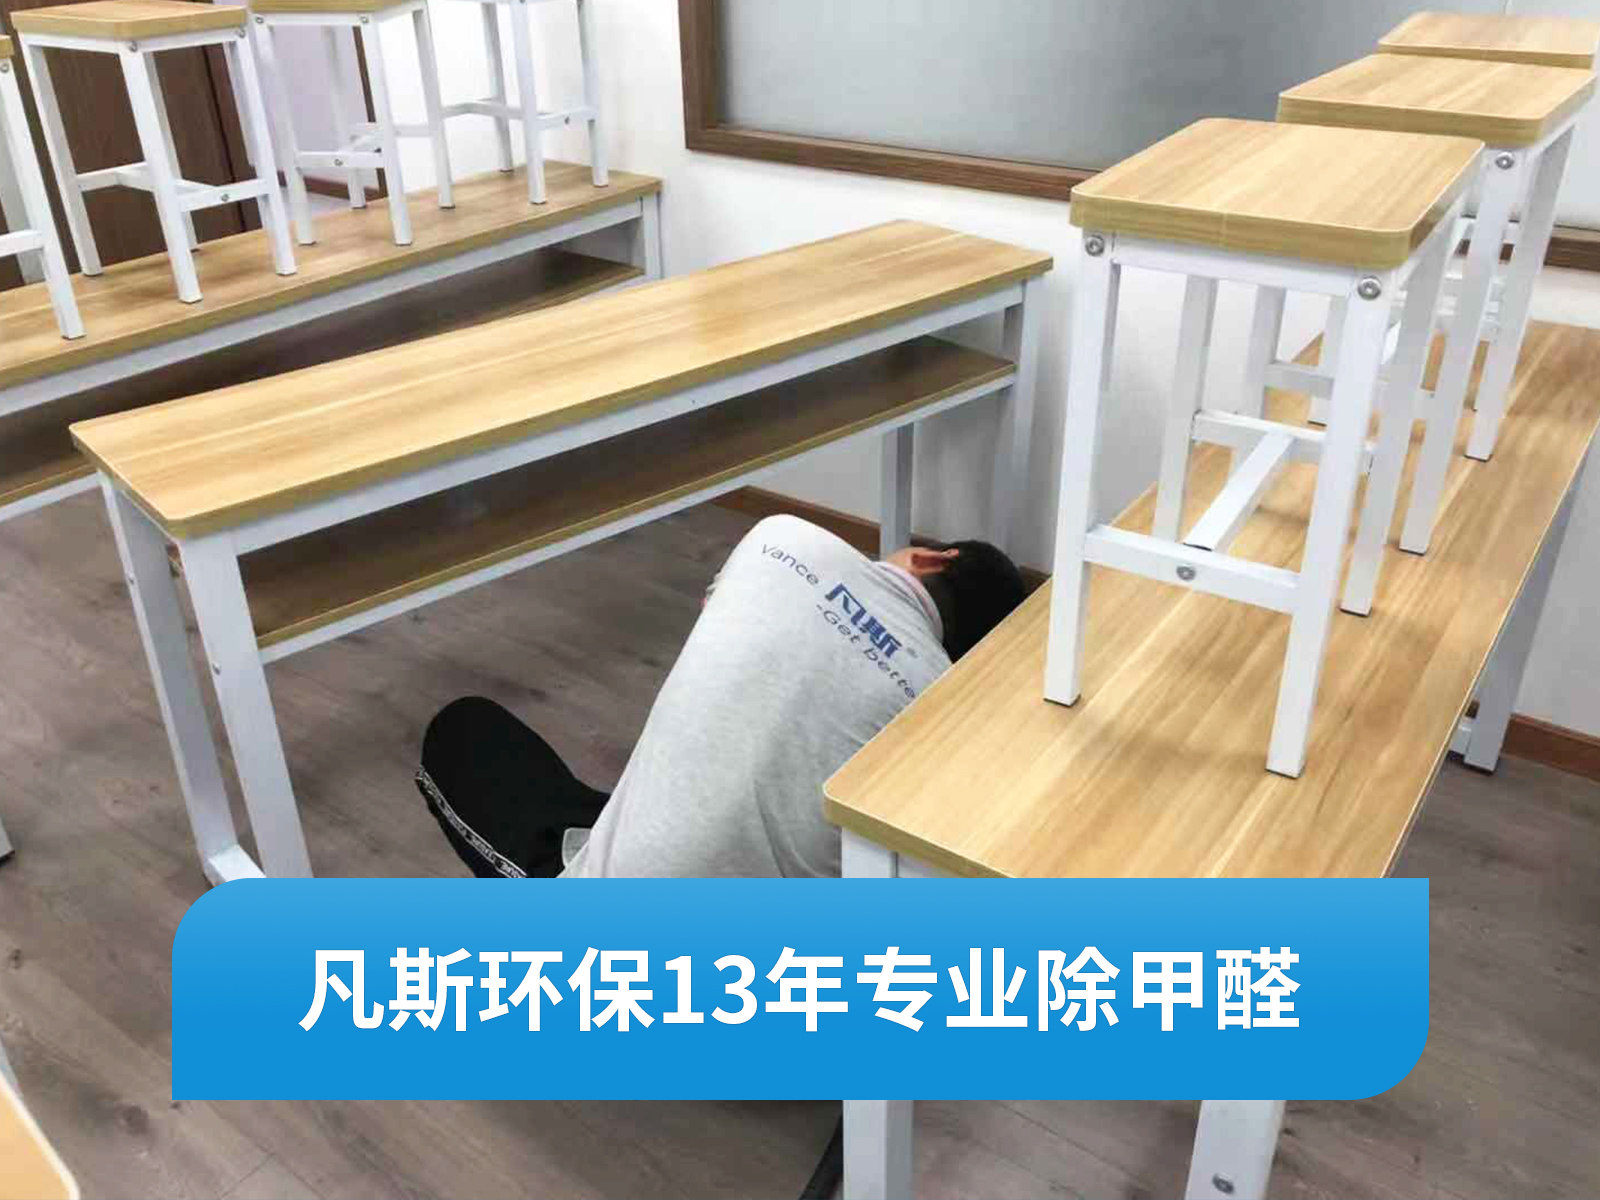 【上海凡斯环保资讯】家居装修怎样避免室内甲醛污染呢